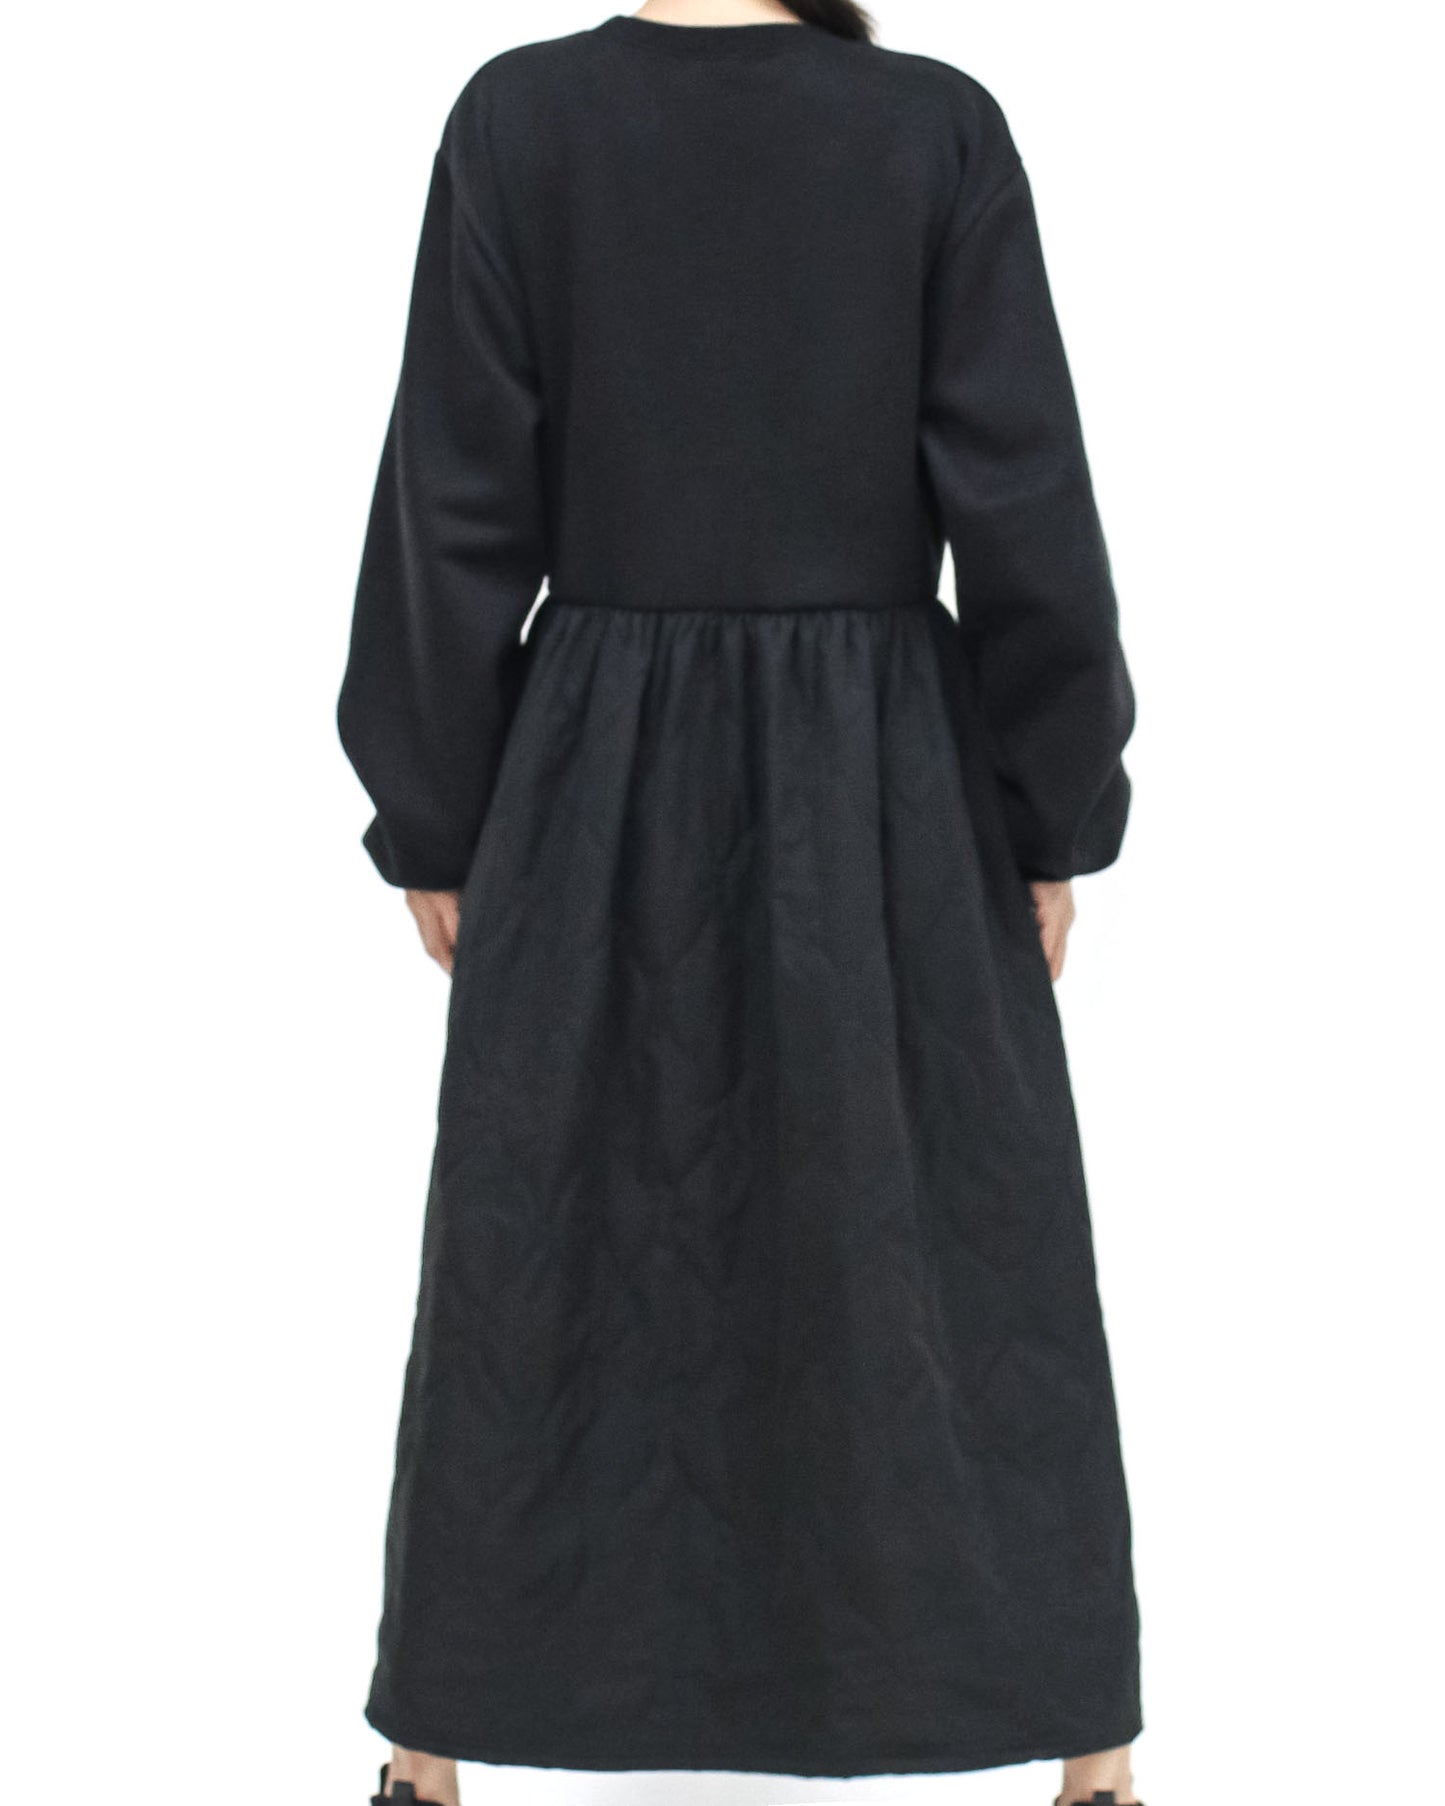 黑色羊毛運動衫搭配絎縫喇叭連身裙